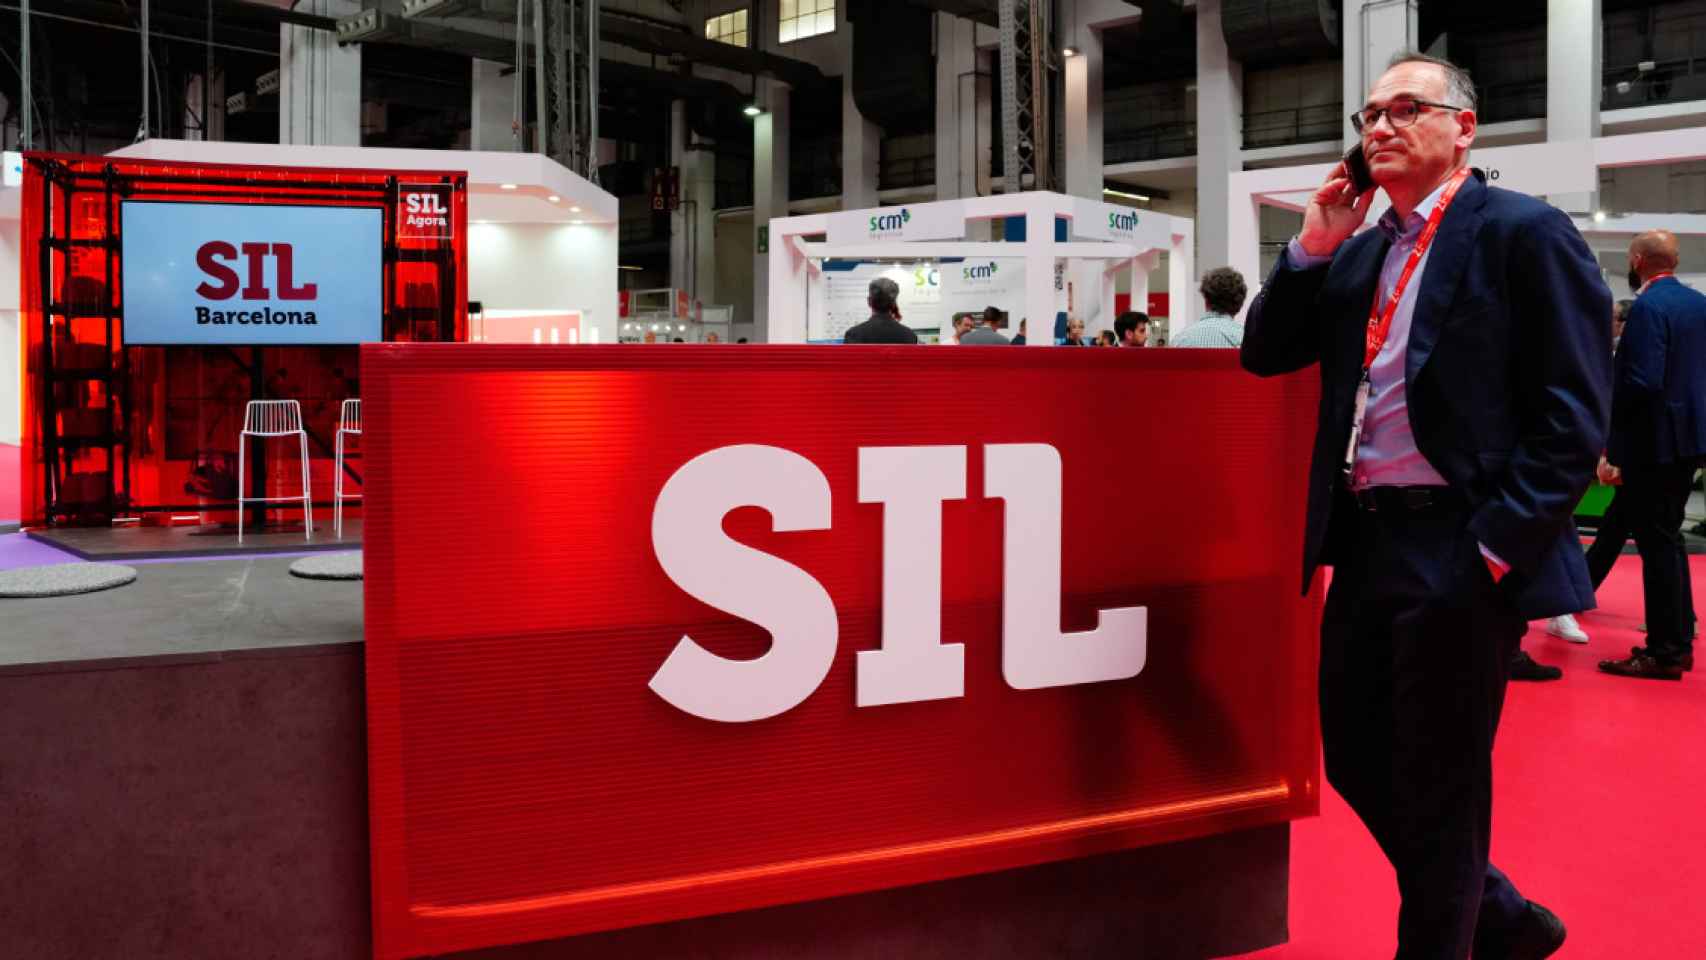 El Salón Internacional de la Logística (SIL) ha vuelto este martes a Barcelona, tras dos años de inactividad a causa de la pandemia / EFE